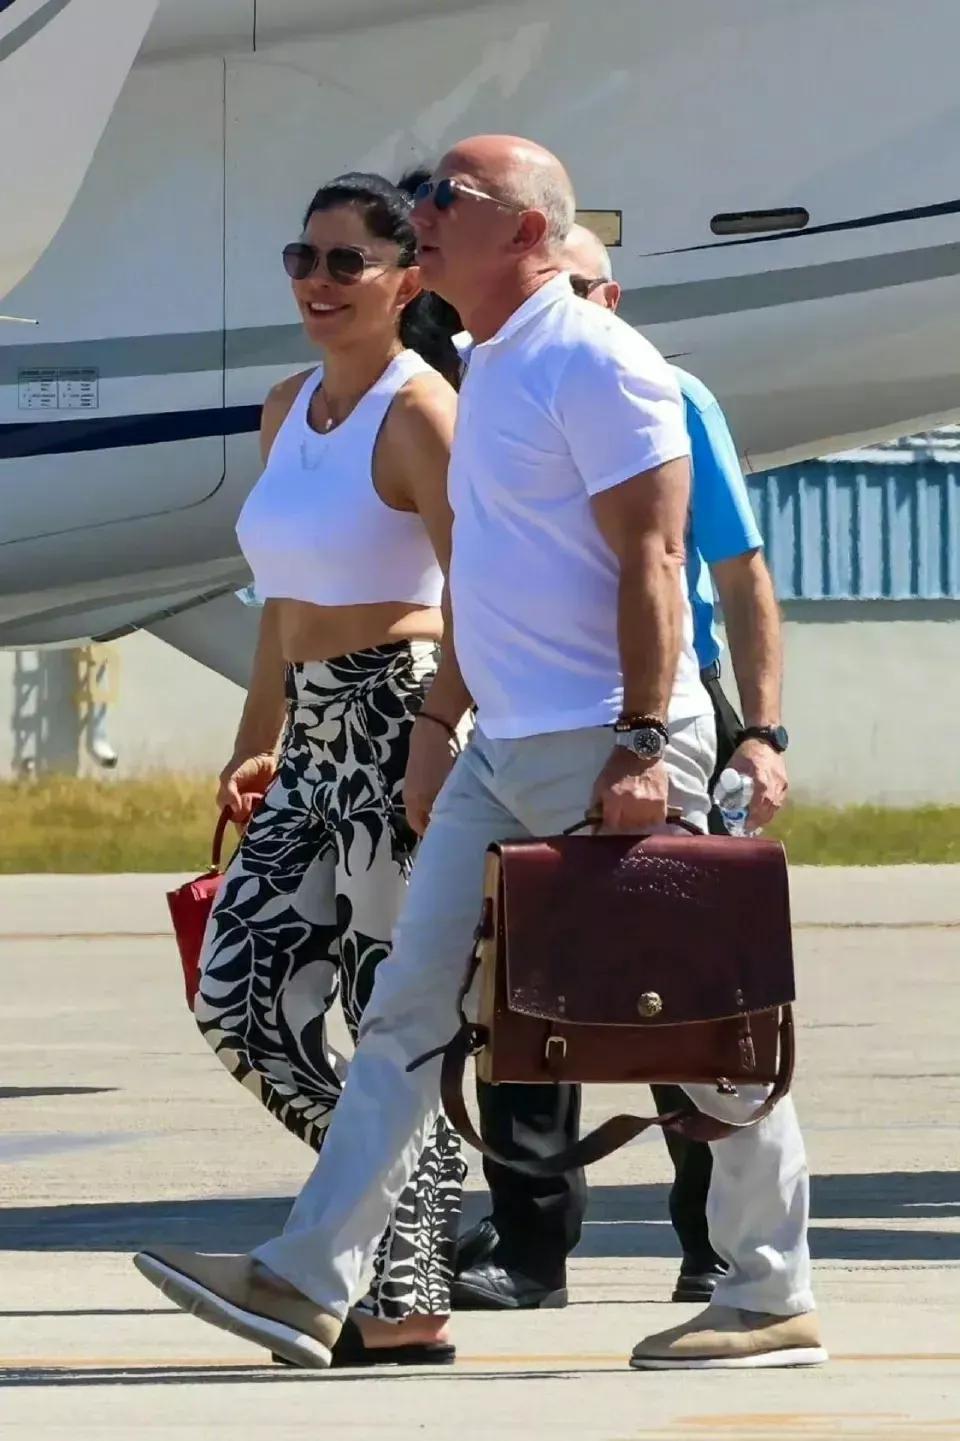 贝佐斯和女友桑切斯抵达迈阿密，俩人手牵手太温馨，桑切斯短衫配花裤挺时髦！

贝索(7)